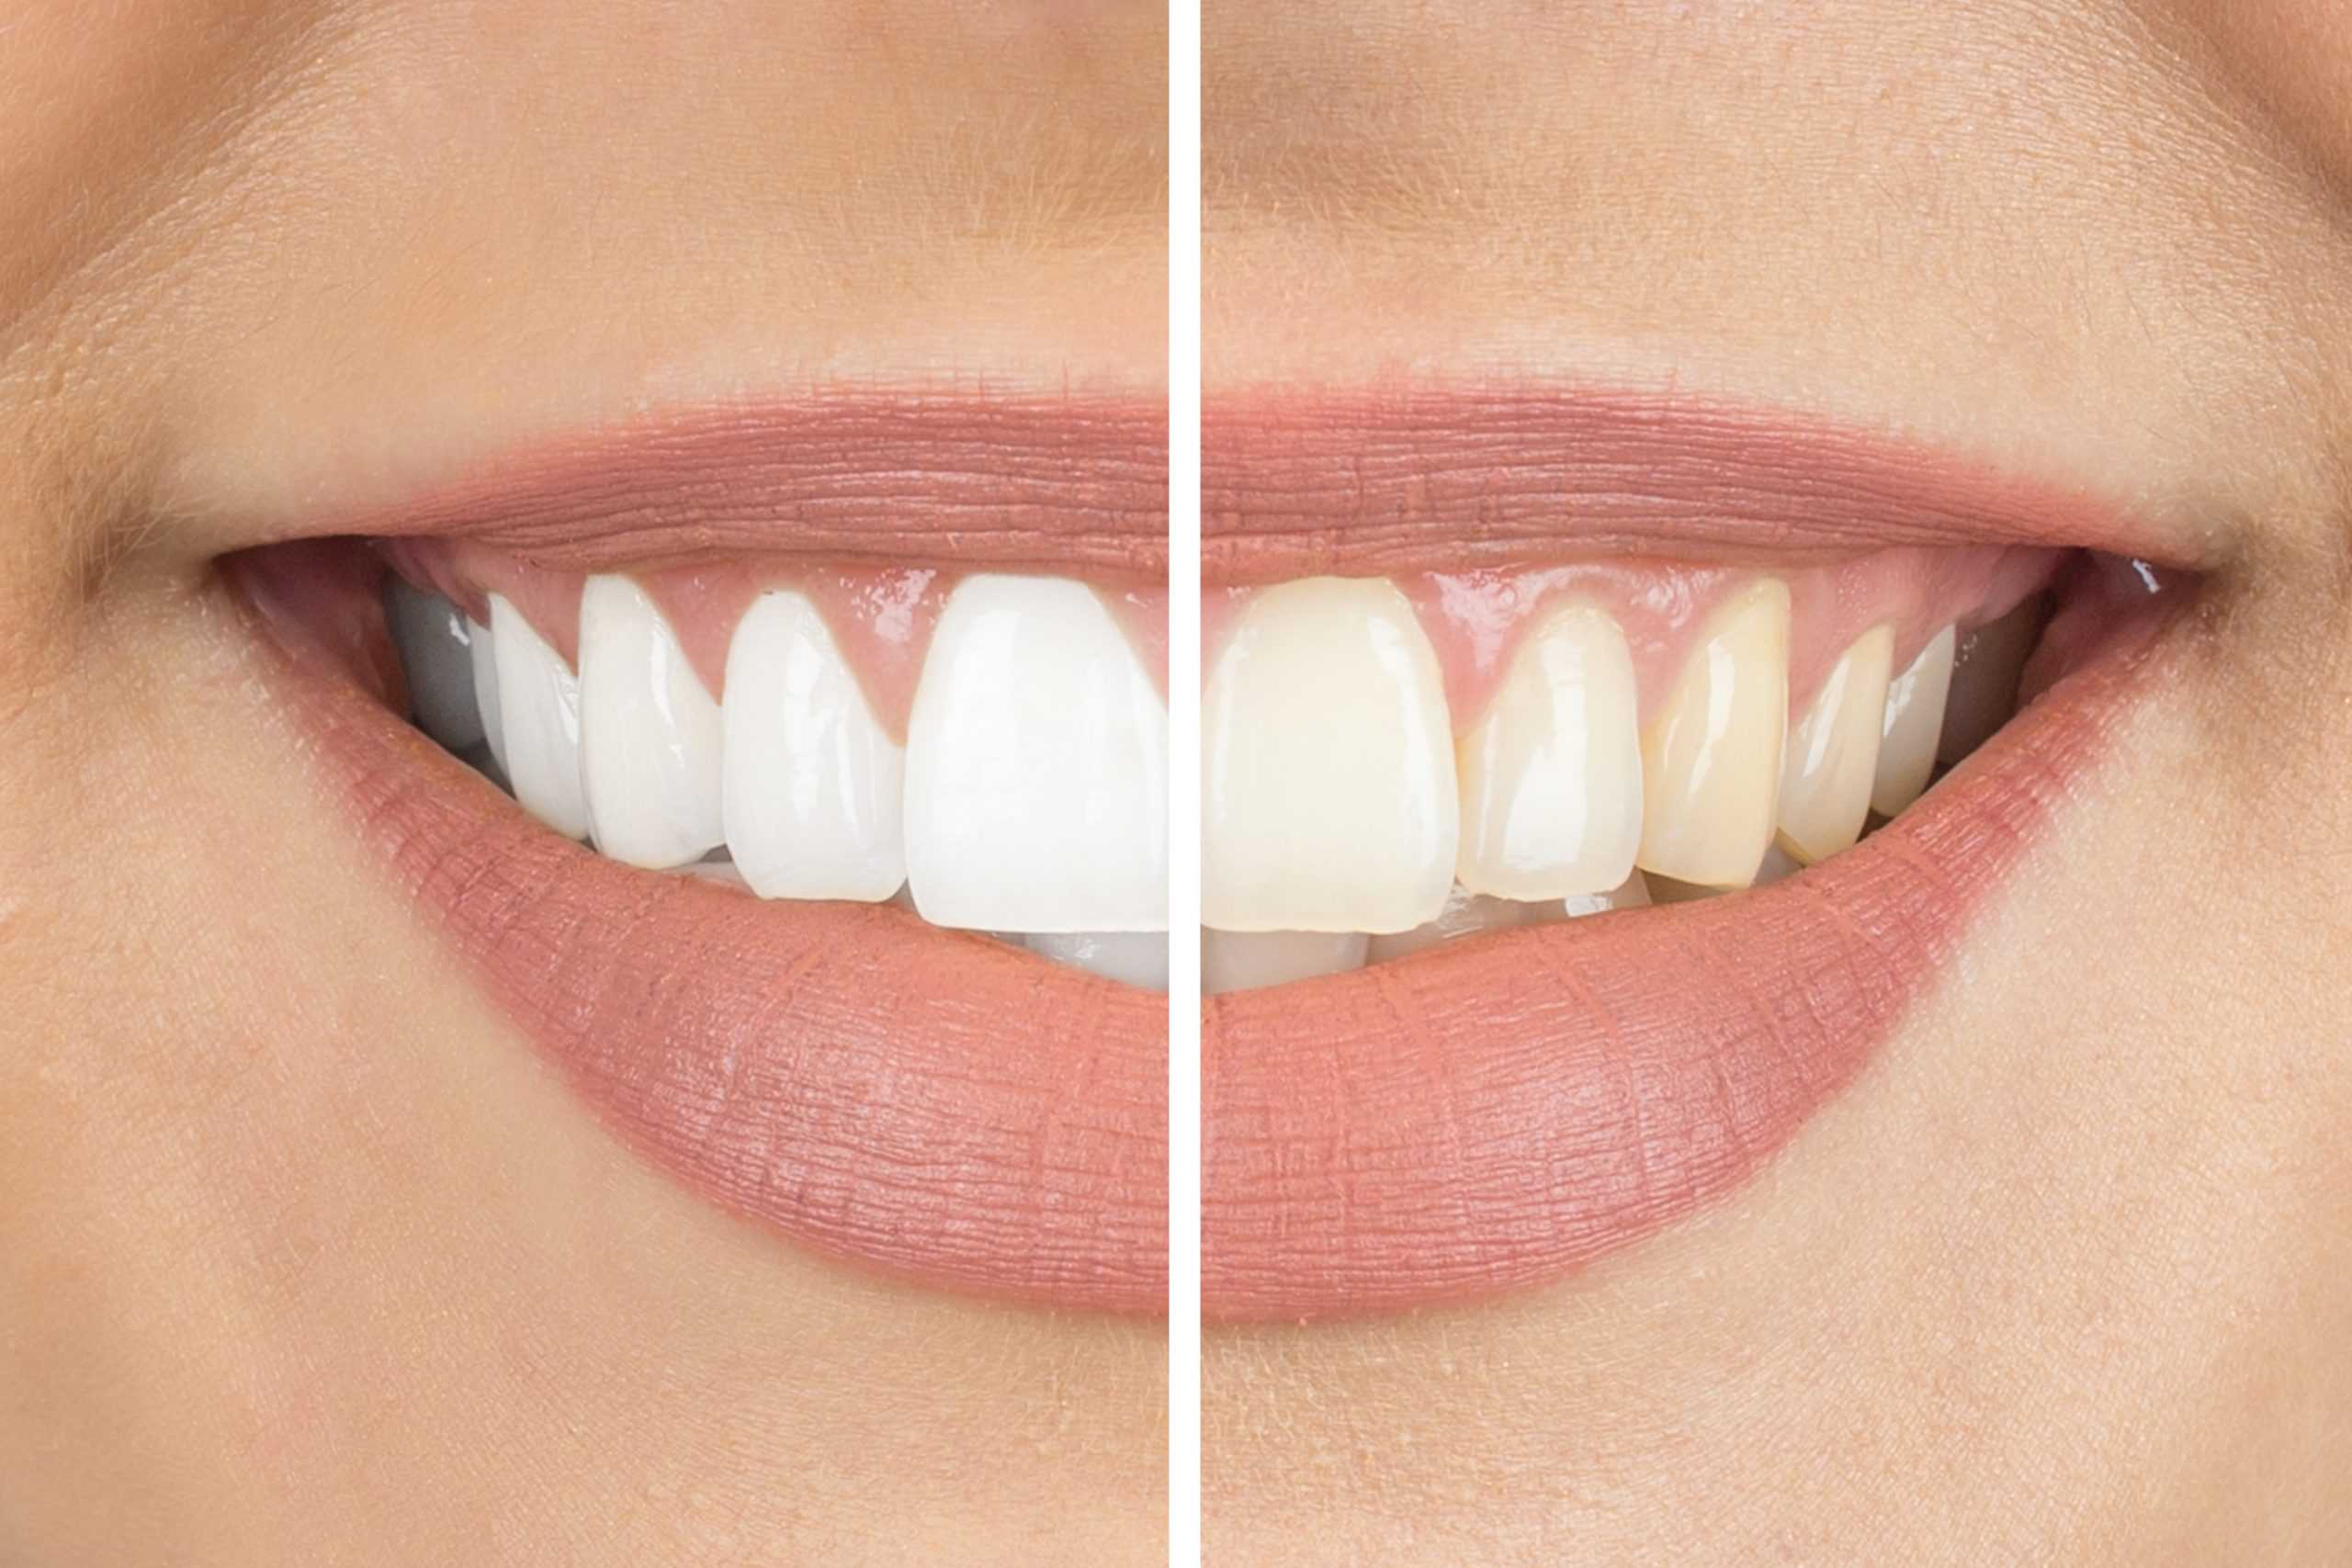 teeth whitening side-by-side